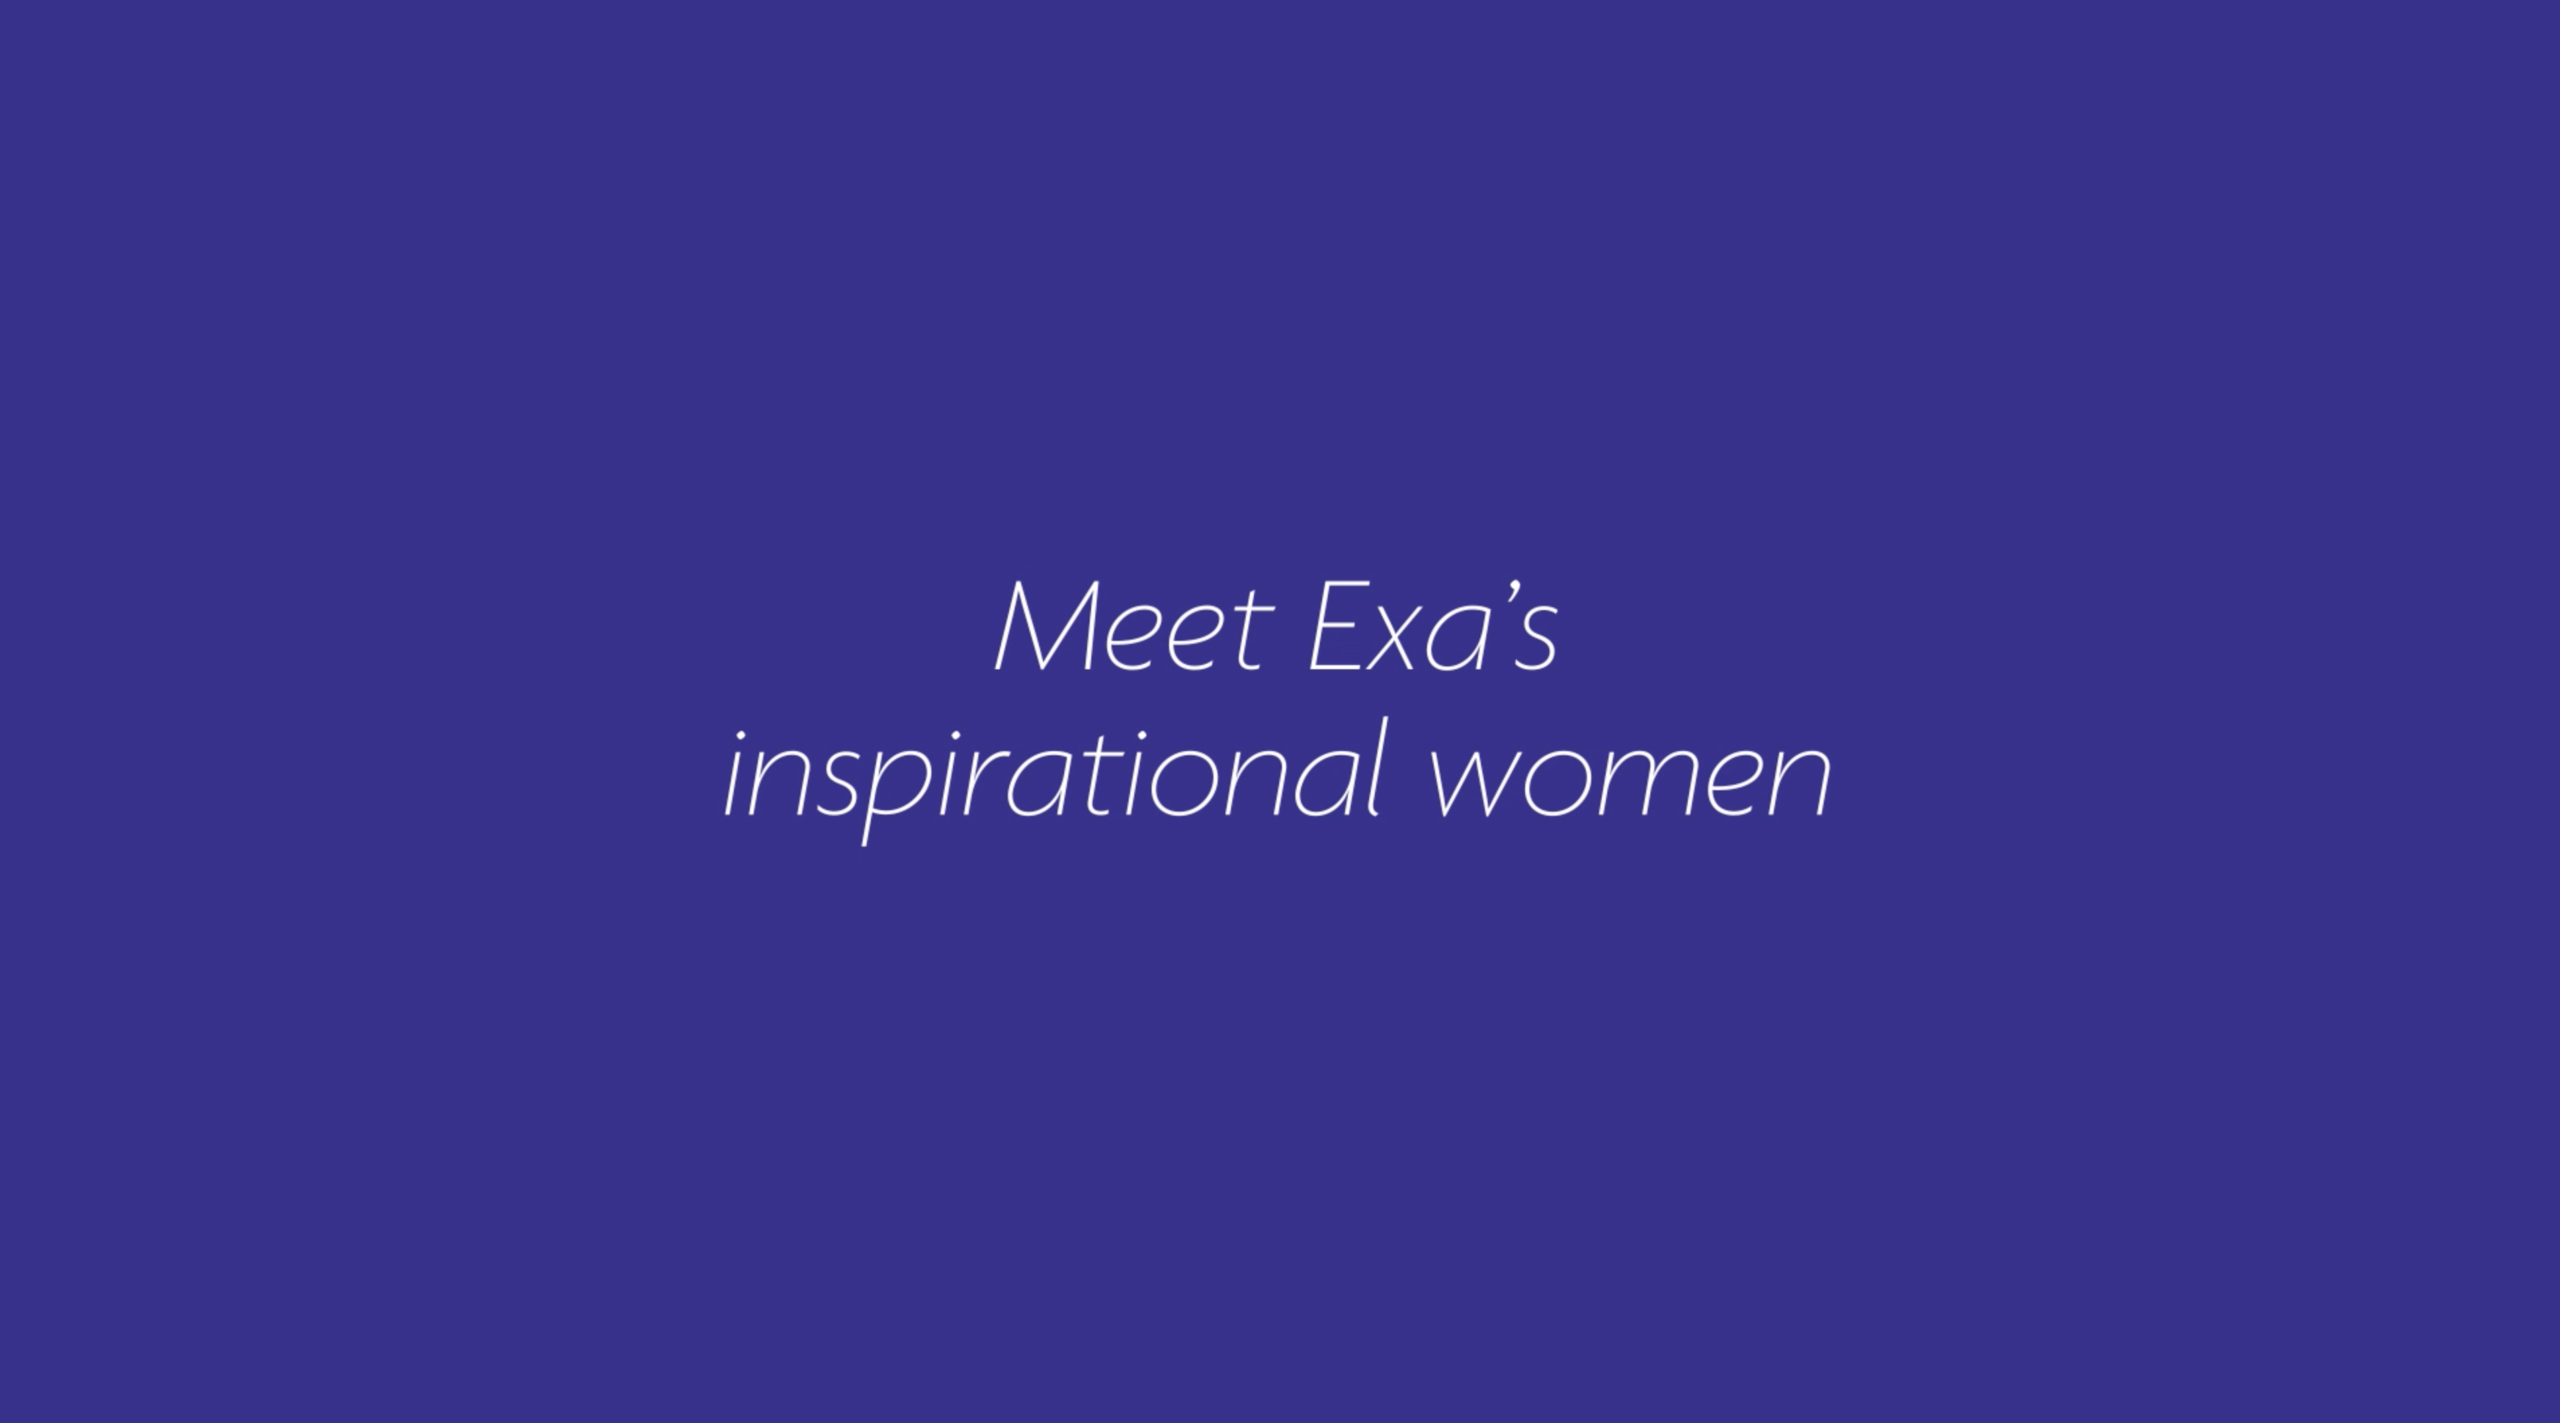 Exa's inspirational women for international Women's day 2022